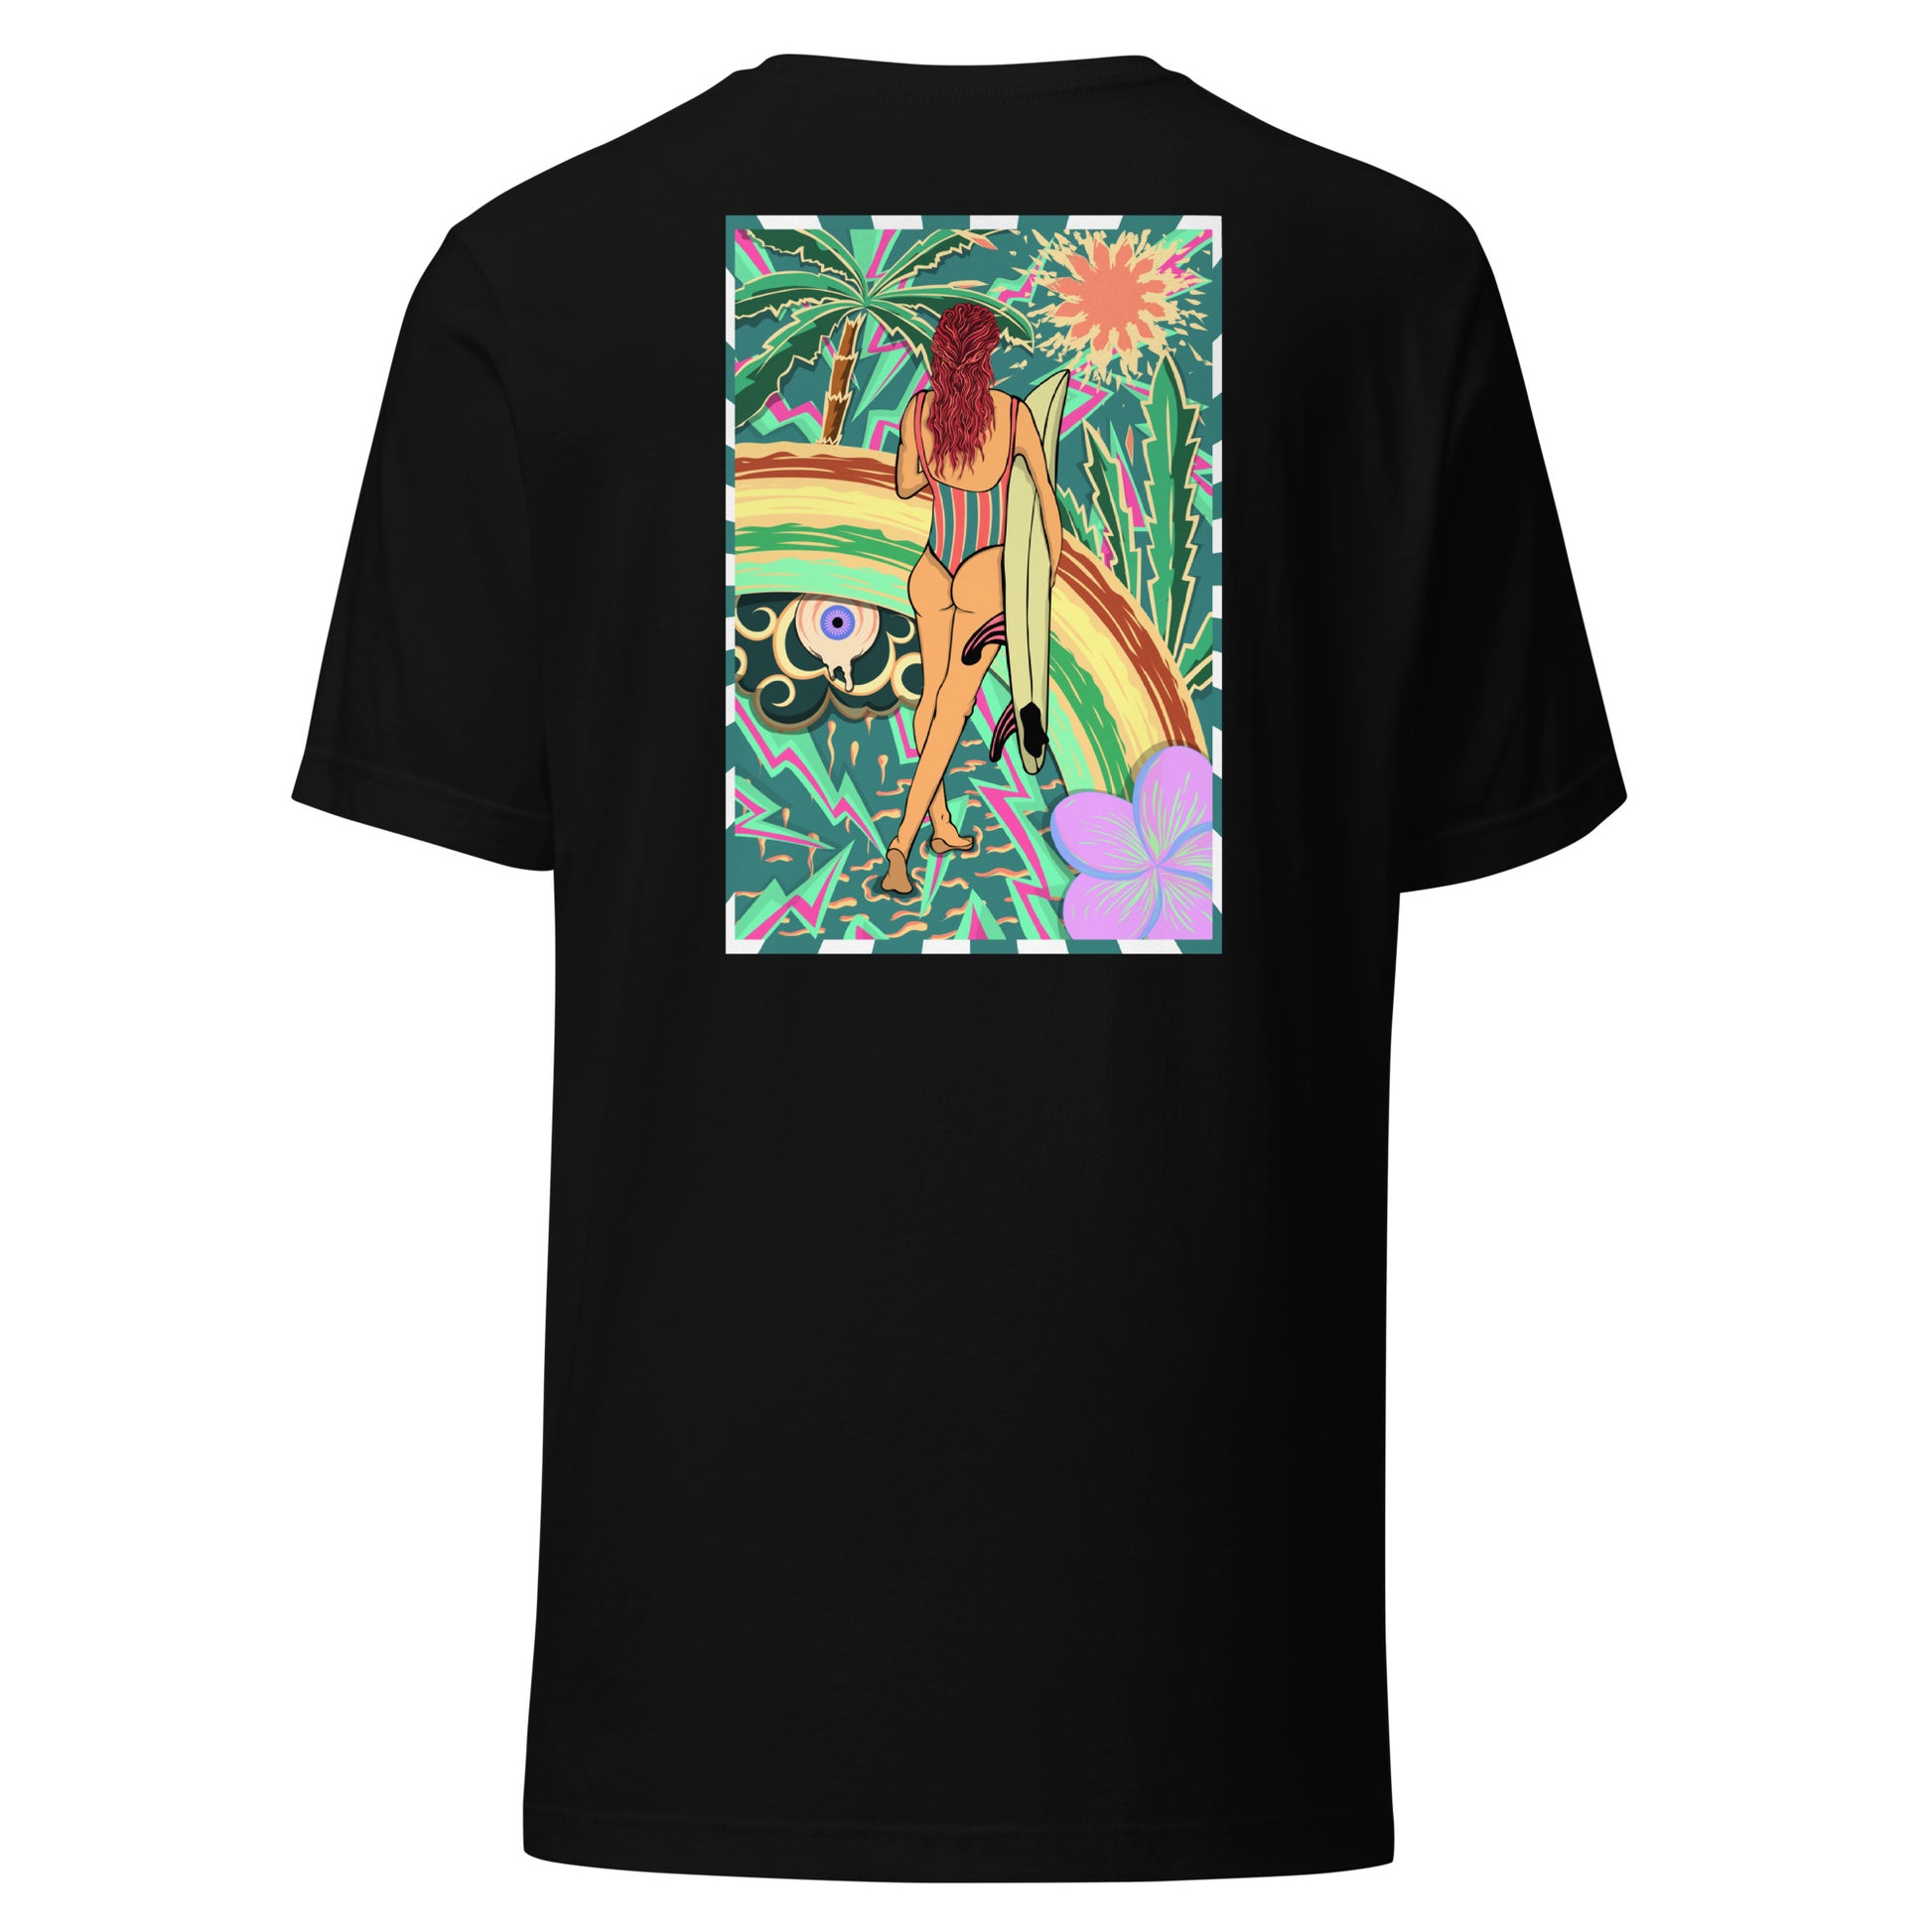 T-shirt surf vintage Walk Of Life surfeuse coloré hippie avec des palmier, fleur, arc en ciel et œil psychédélique. Tshirt dos noir